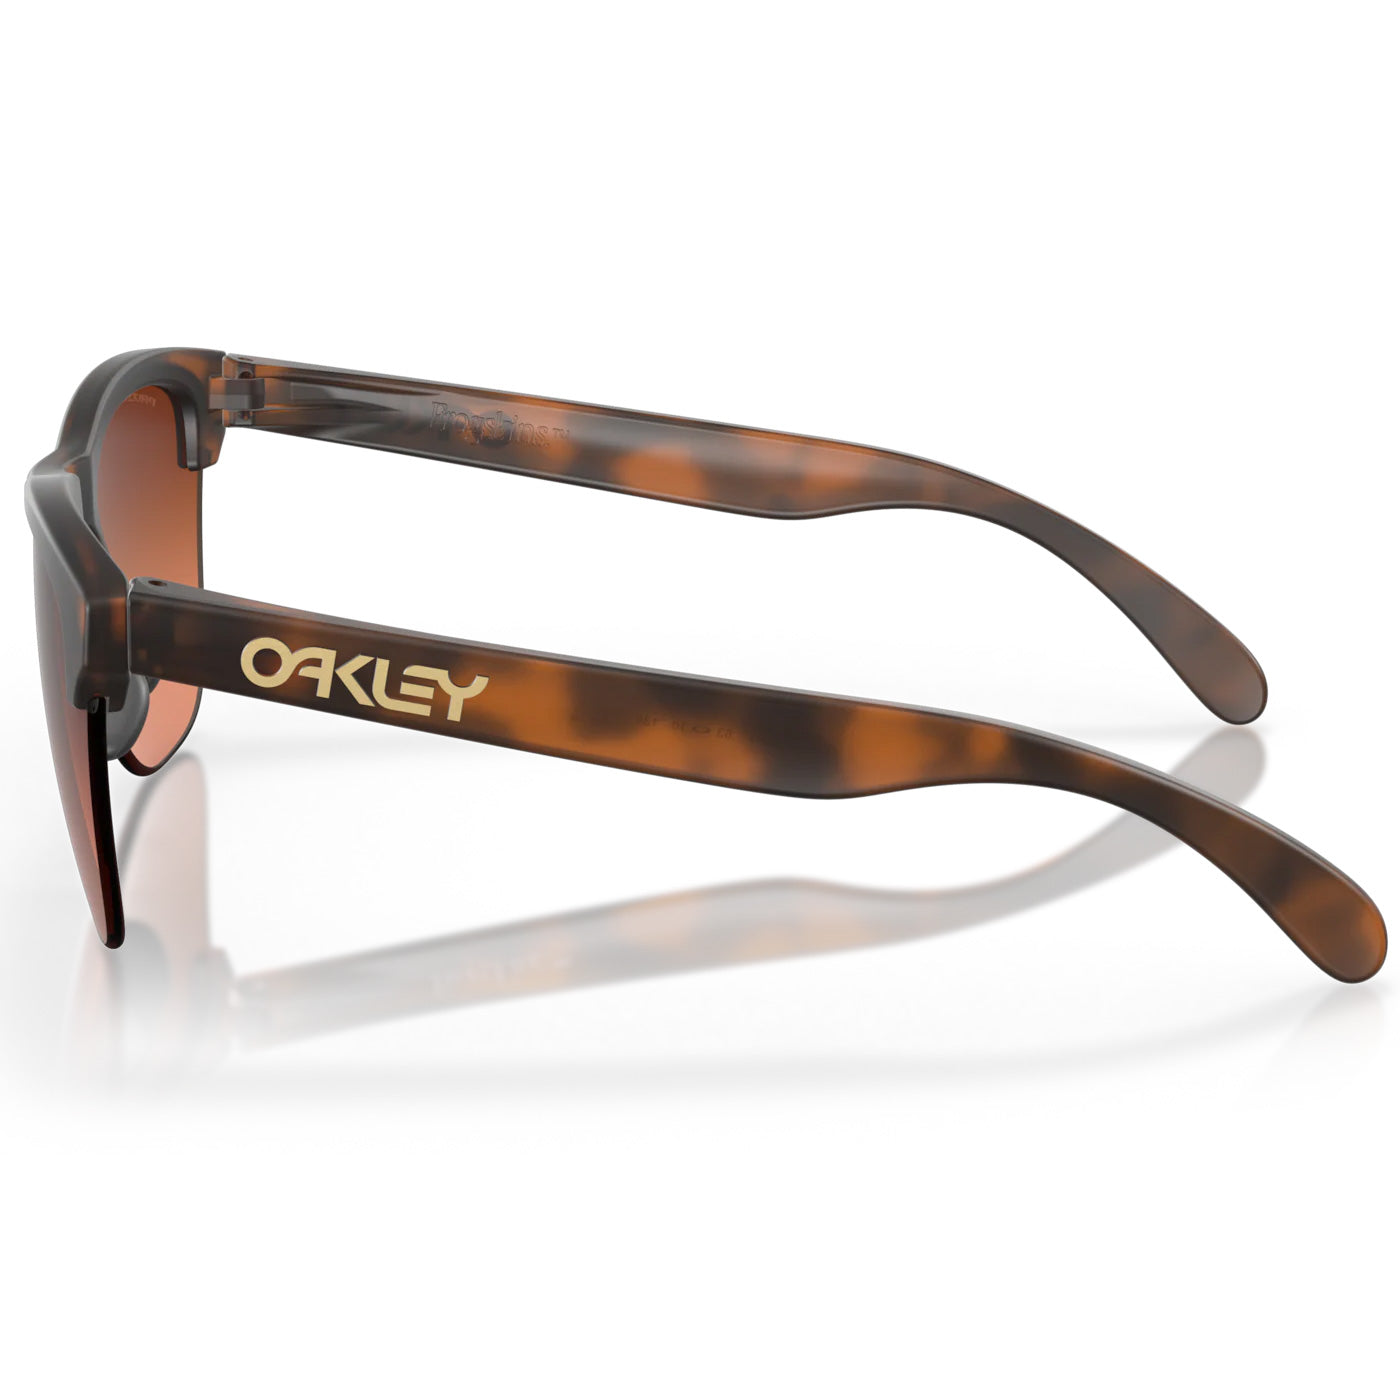 Oakley Frogskins Lite sunglasses - Matte Tortoise Prizm Brown Gradient